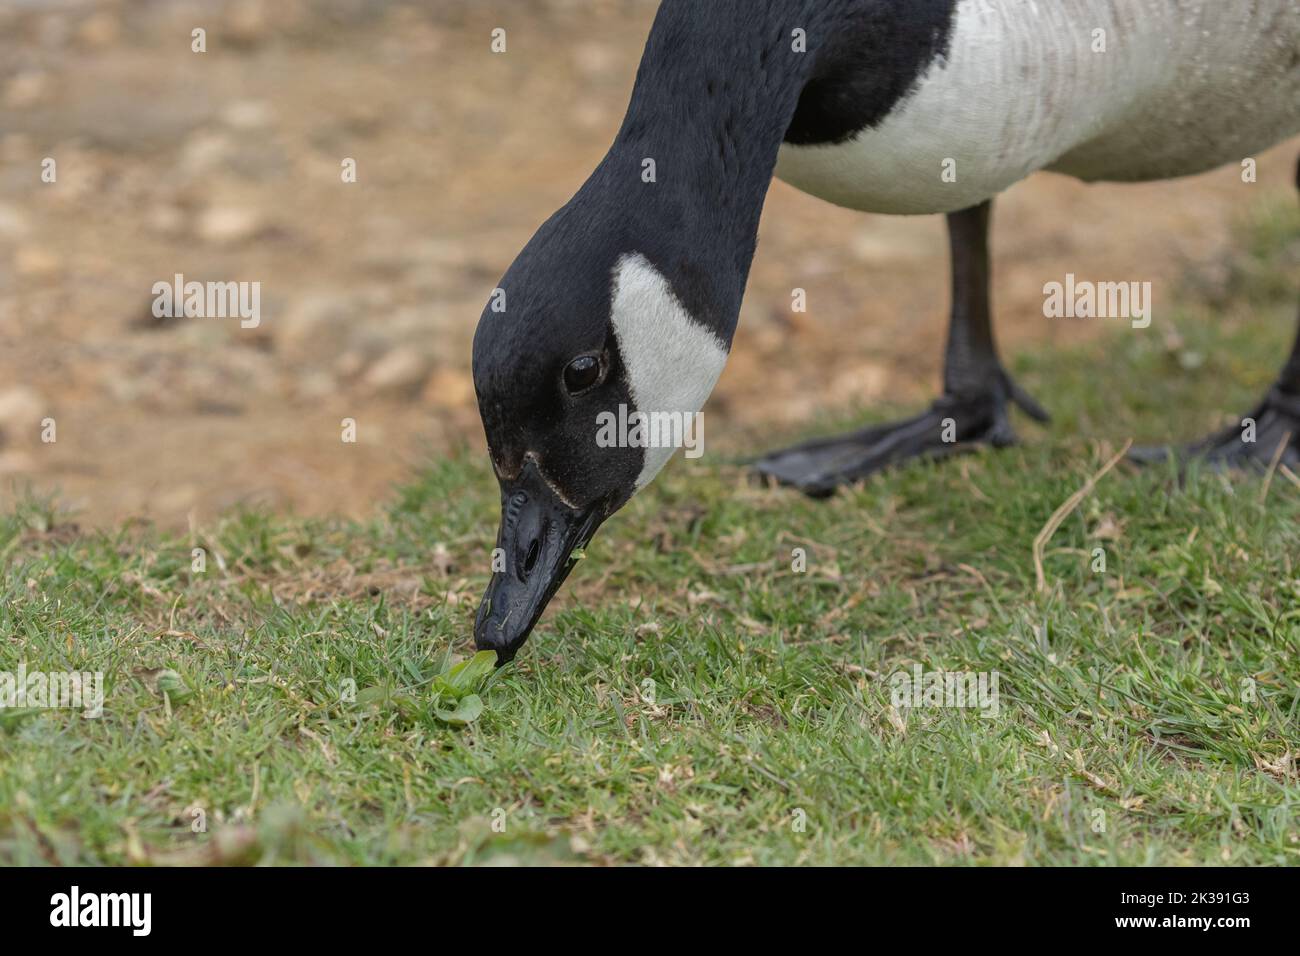 A wild canada goose (Branta canadensis) eating grass. Stock Photo